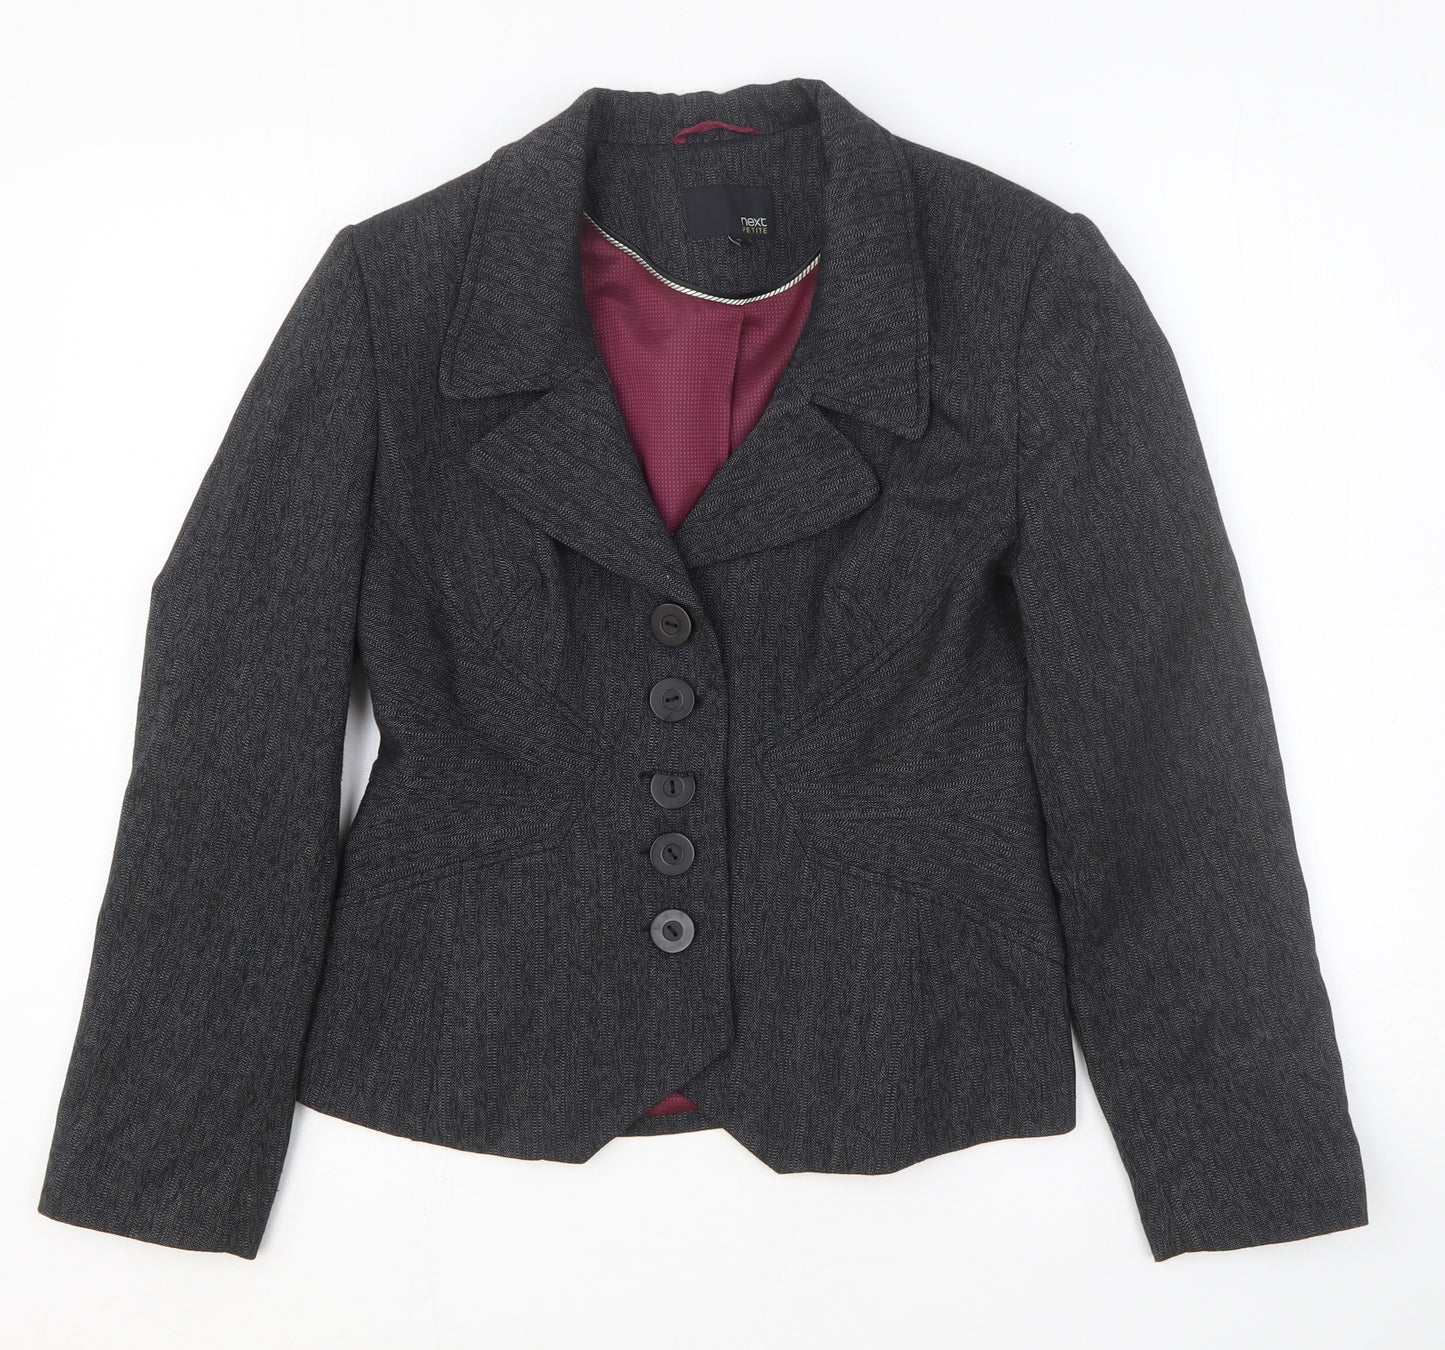 NEXT Womens Grey Geometric Polyester Jacket Blazer Size 12